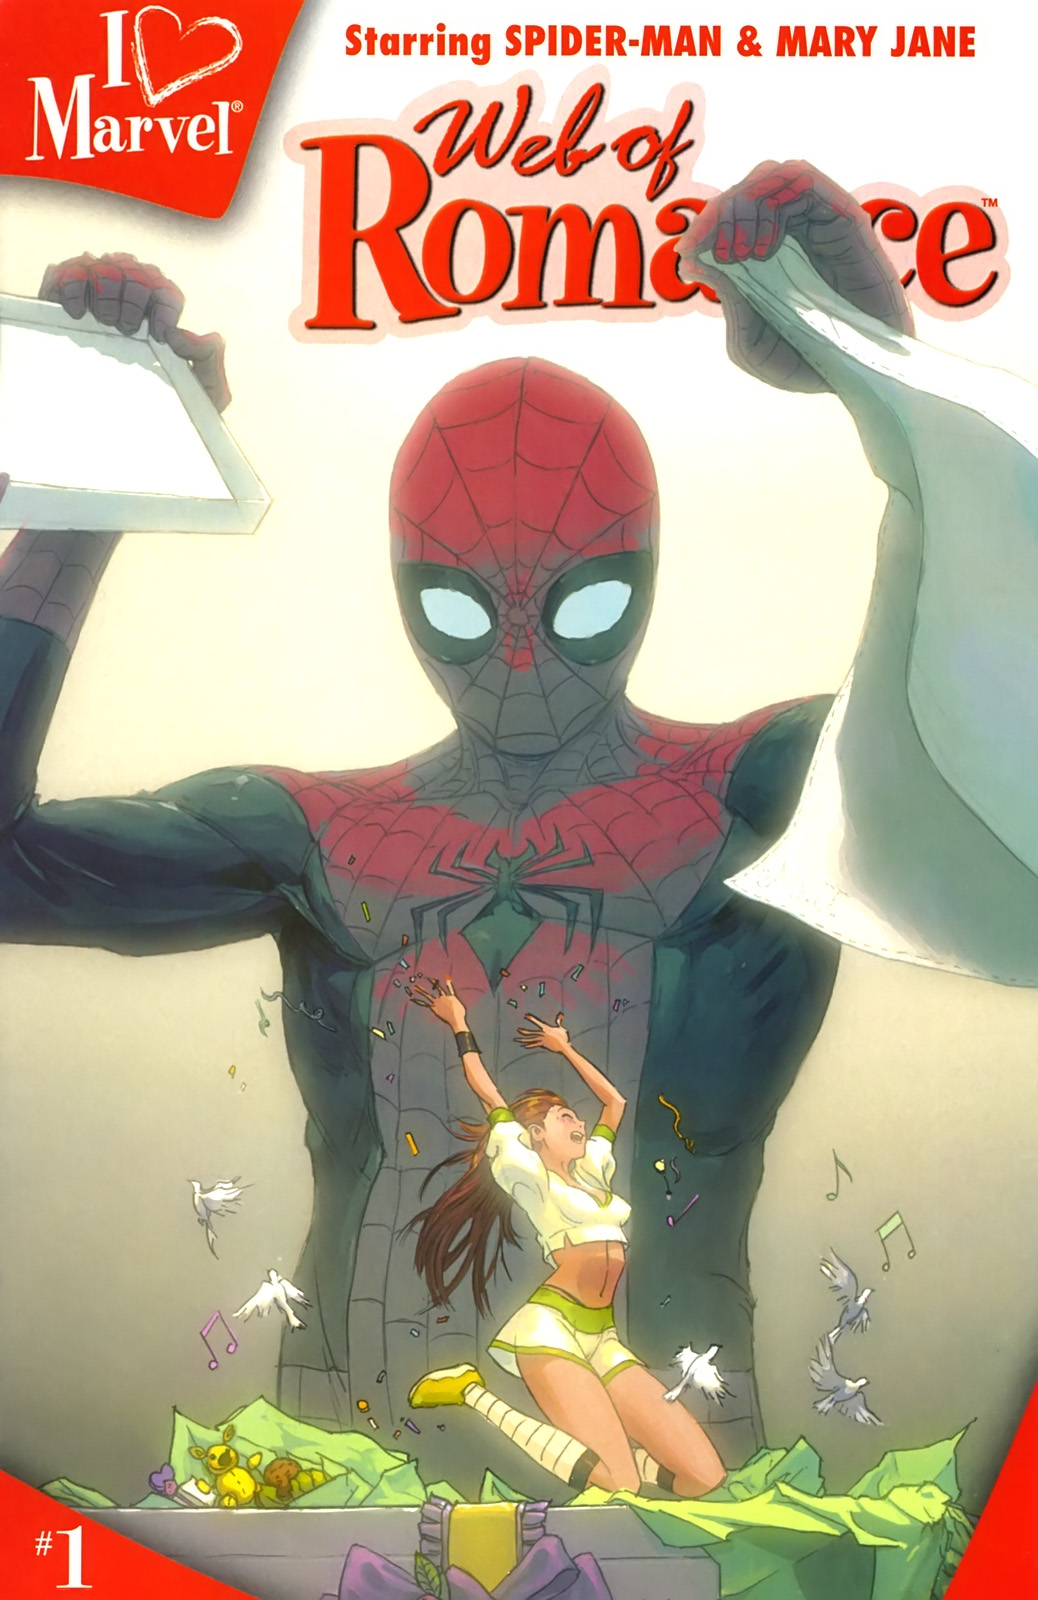 Read online I (heart) Marvel: Web of Romance comic -  Issue # Full - 1